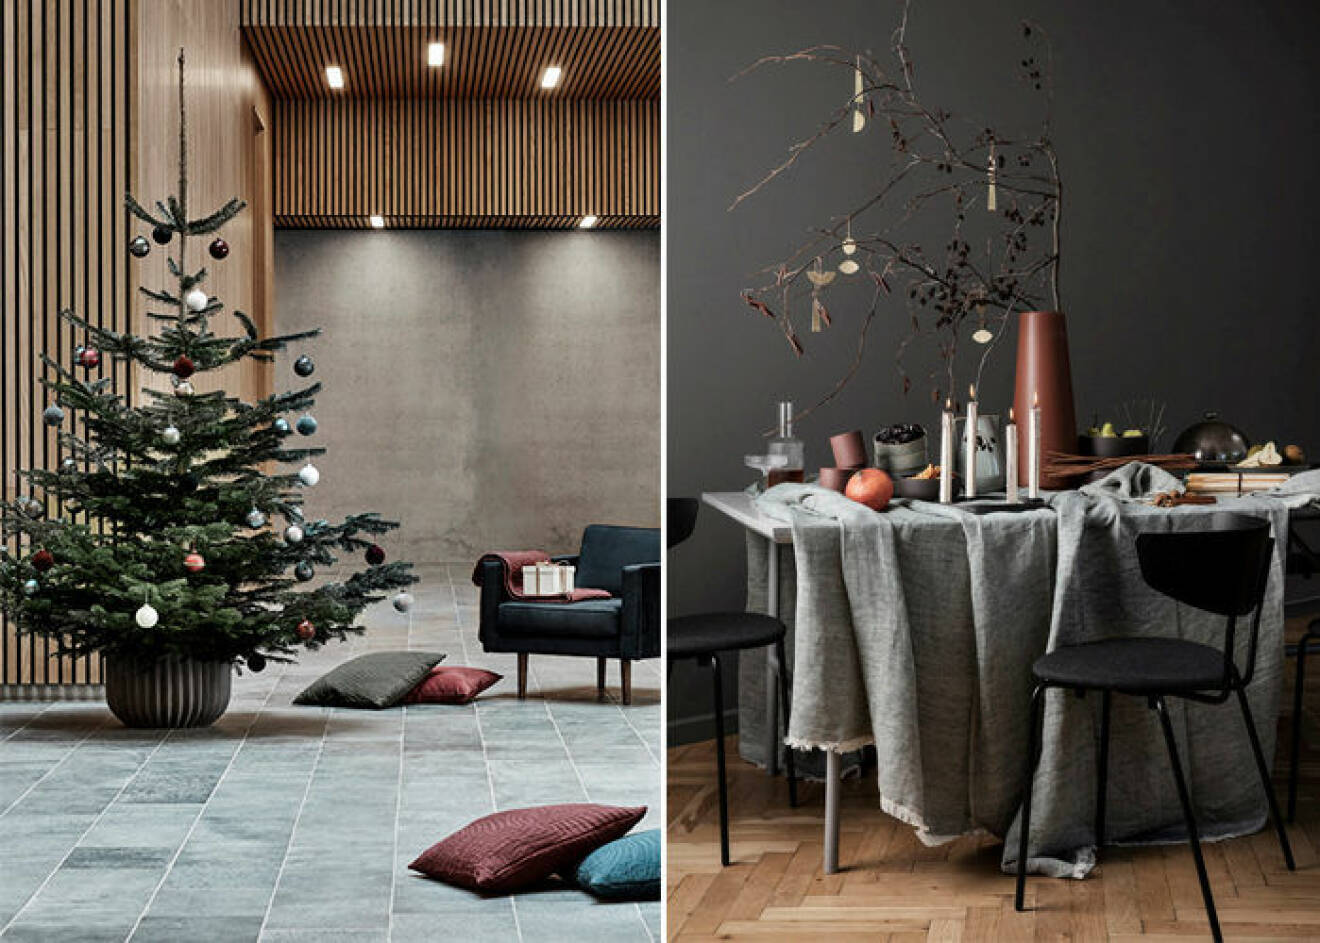 Dova färger dominerar hos danska märken i jul